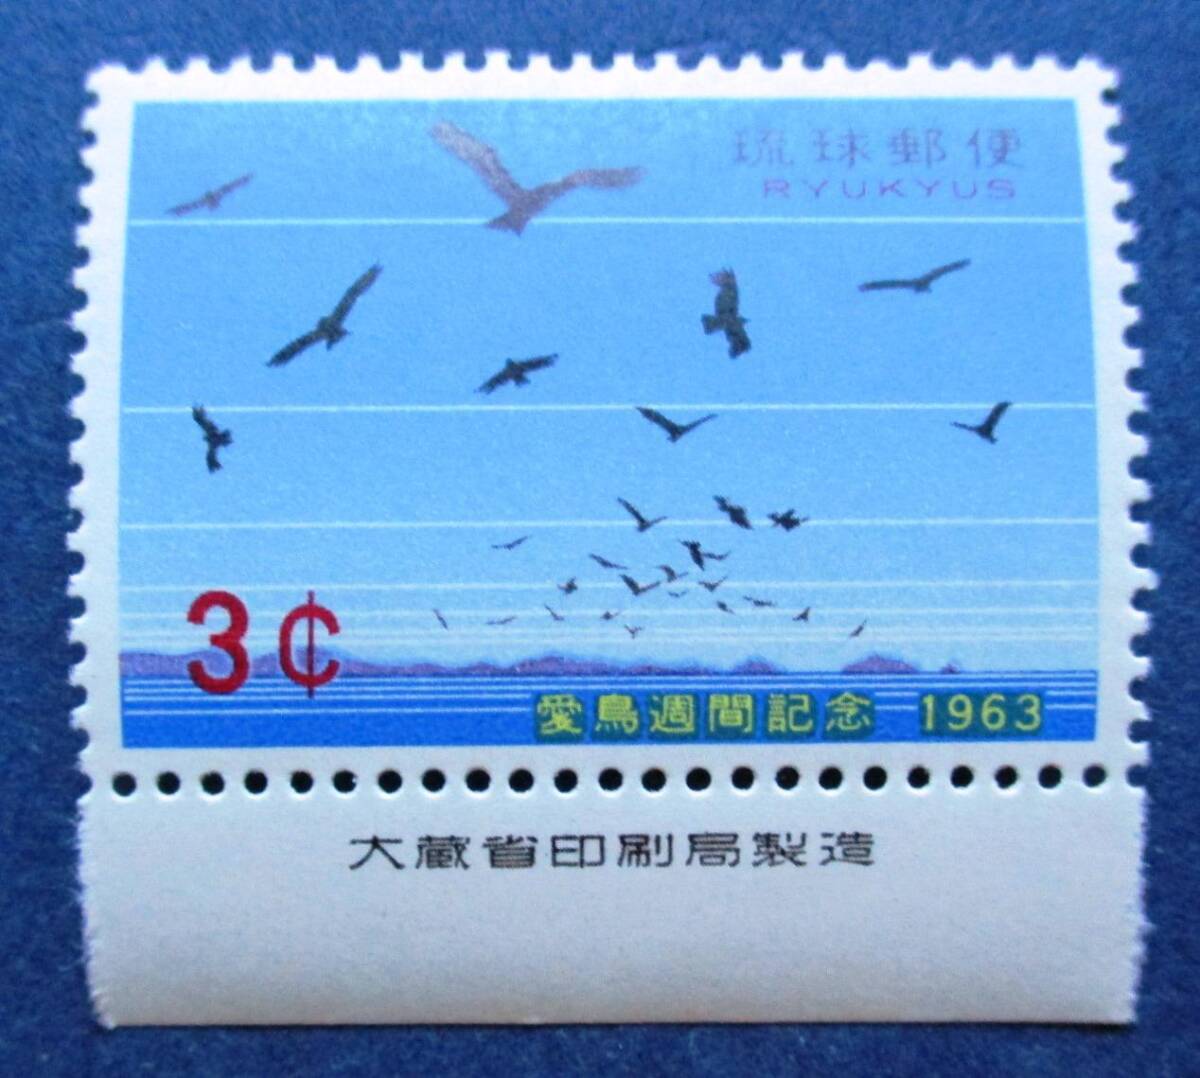 沖縄切手・琉球切手 愛鳥週間 ３￠切手銘版付 AA183 ほぼ美品です。画像参照してください。の画像1